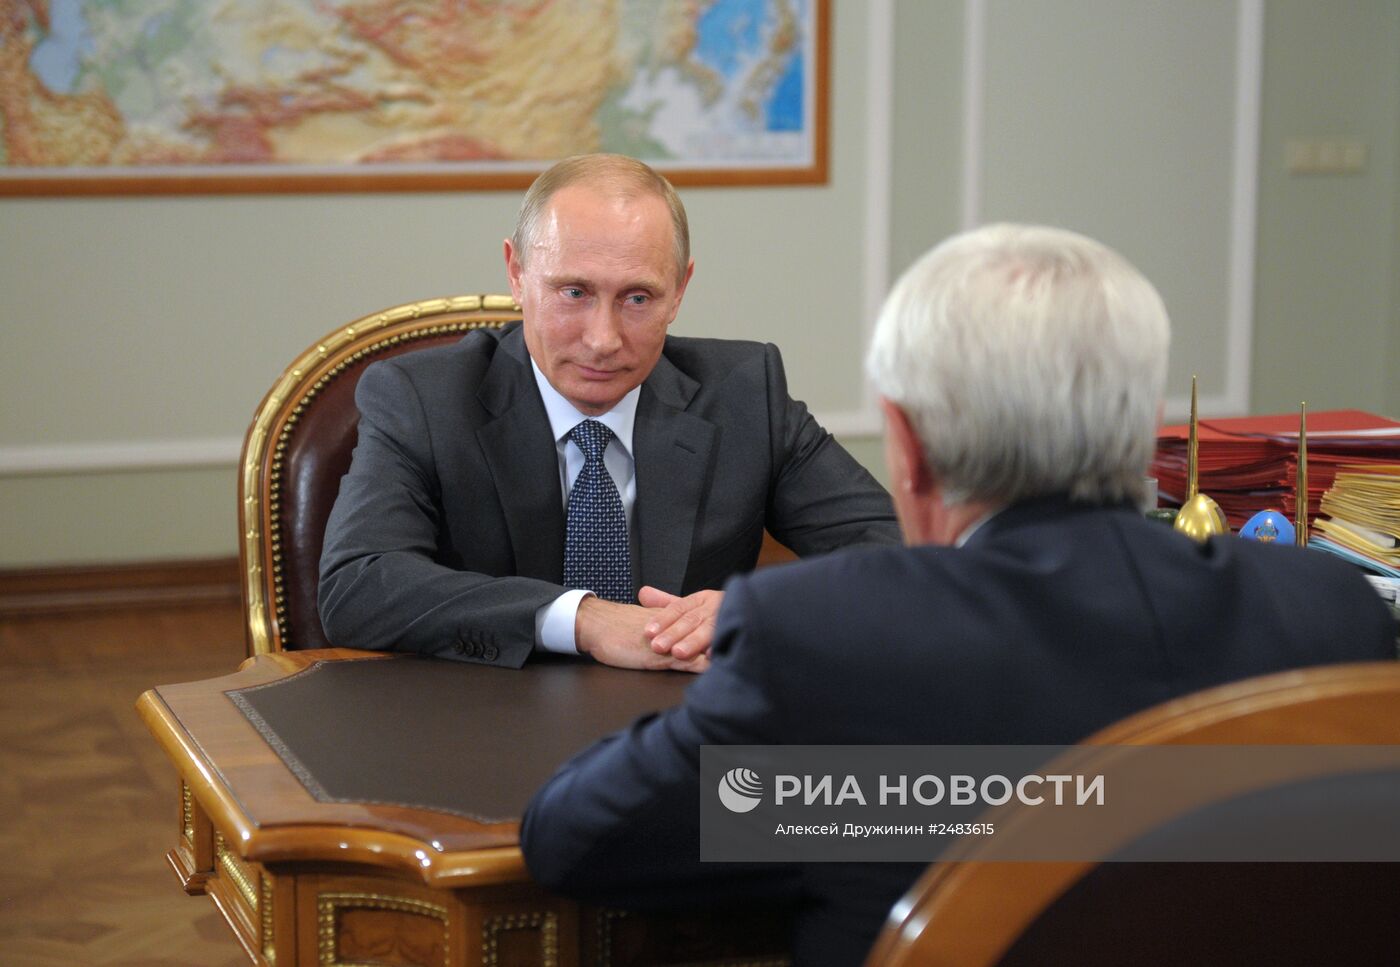 В.Путин встретился с Г.Полтавченко